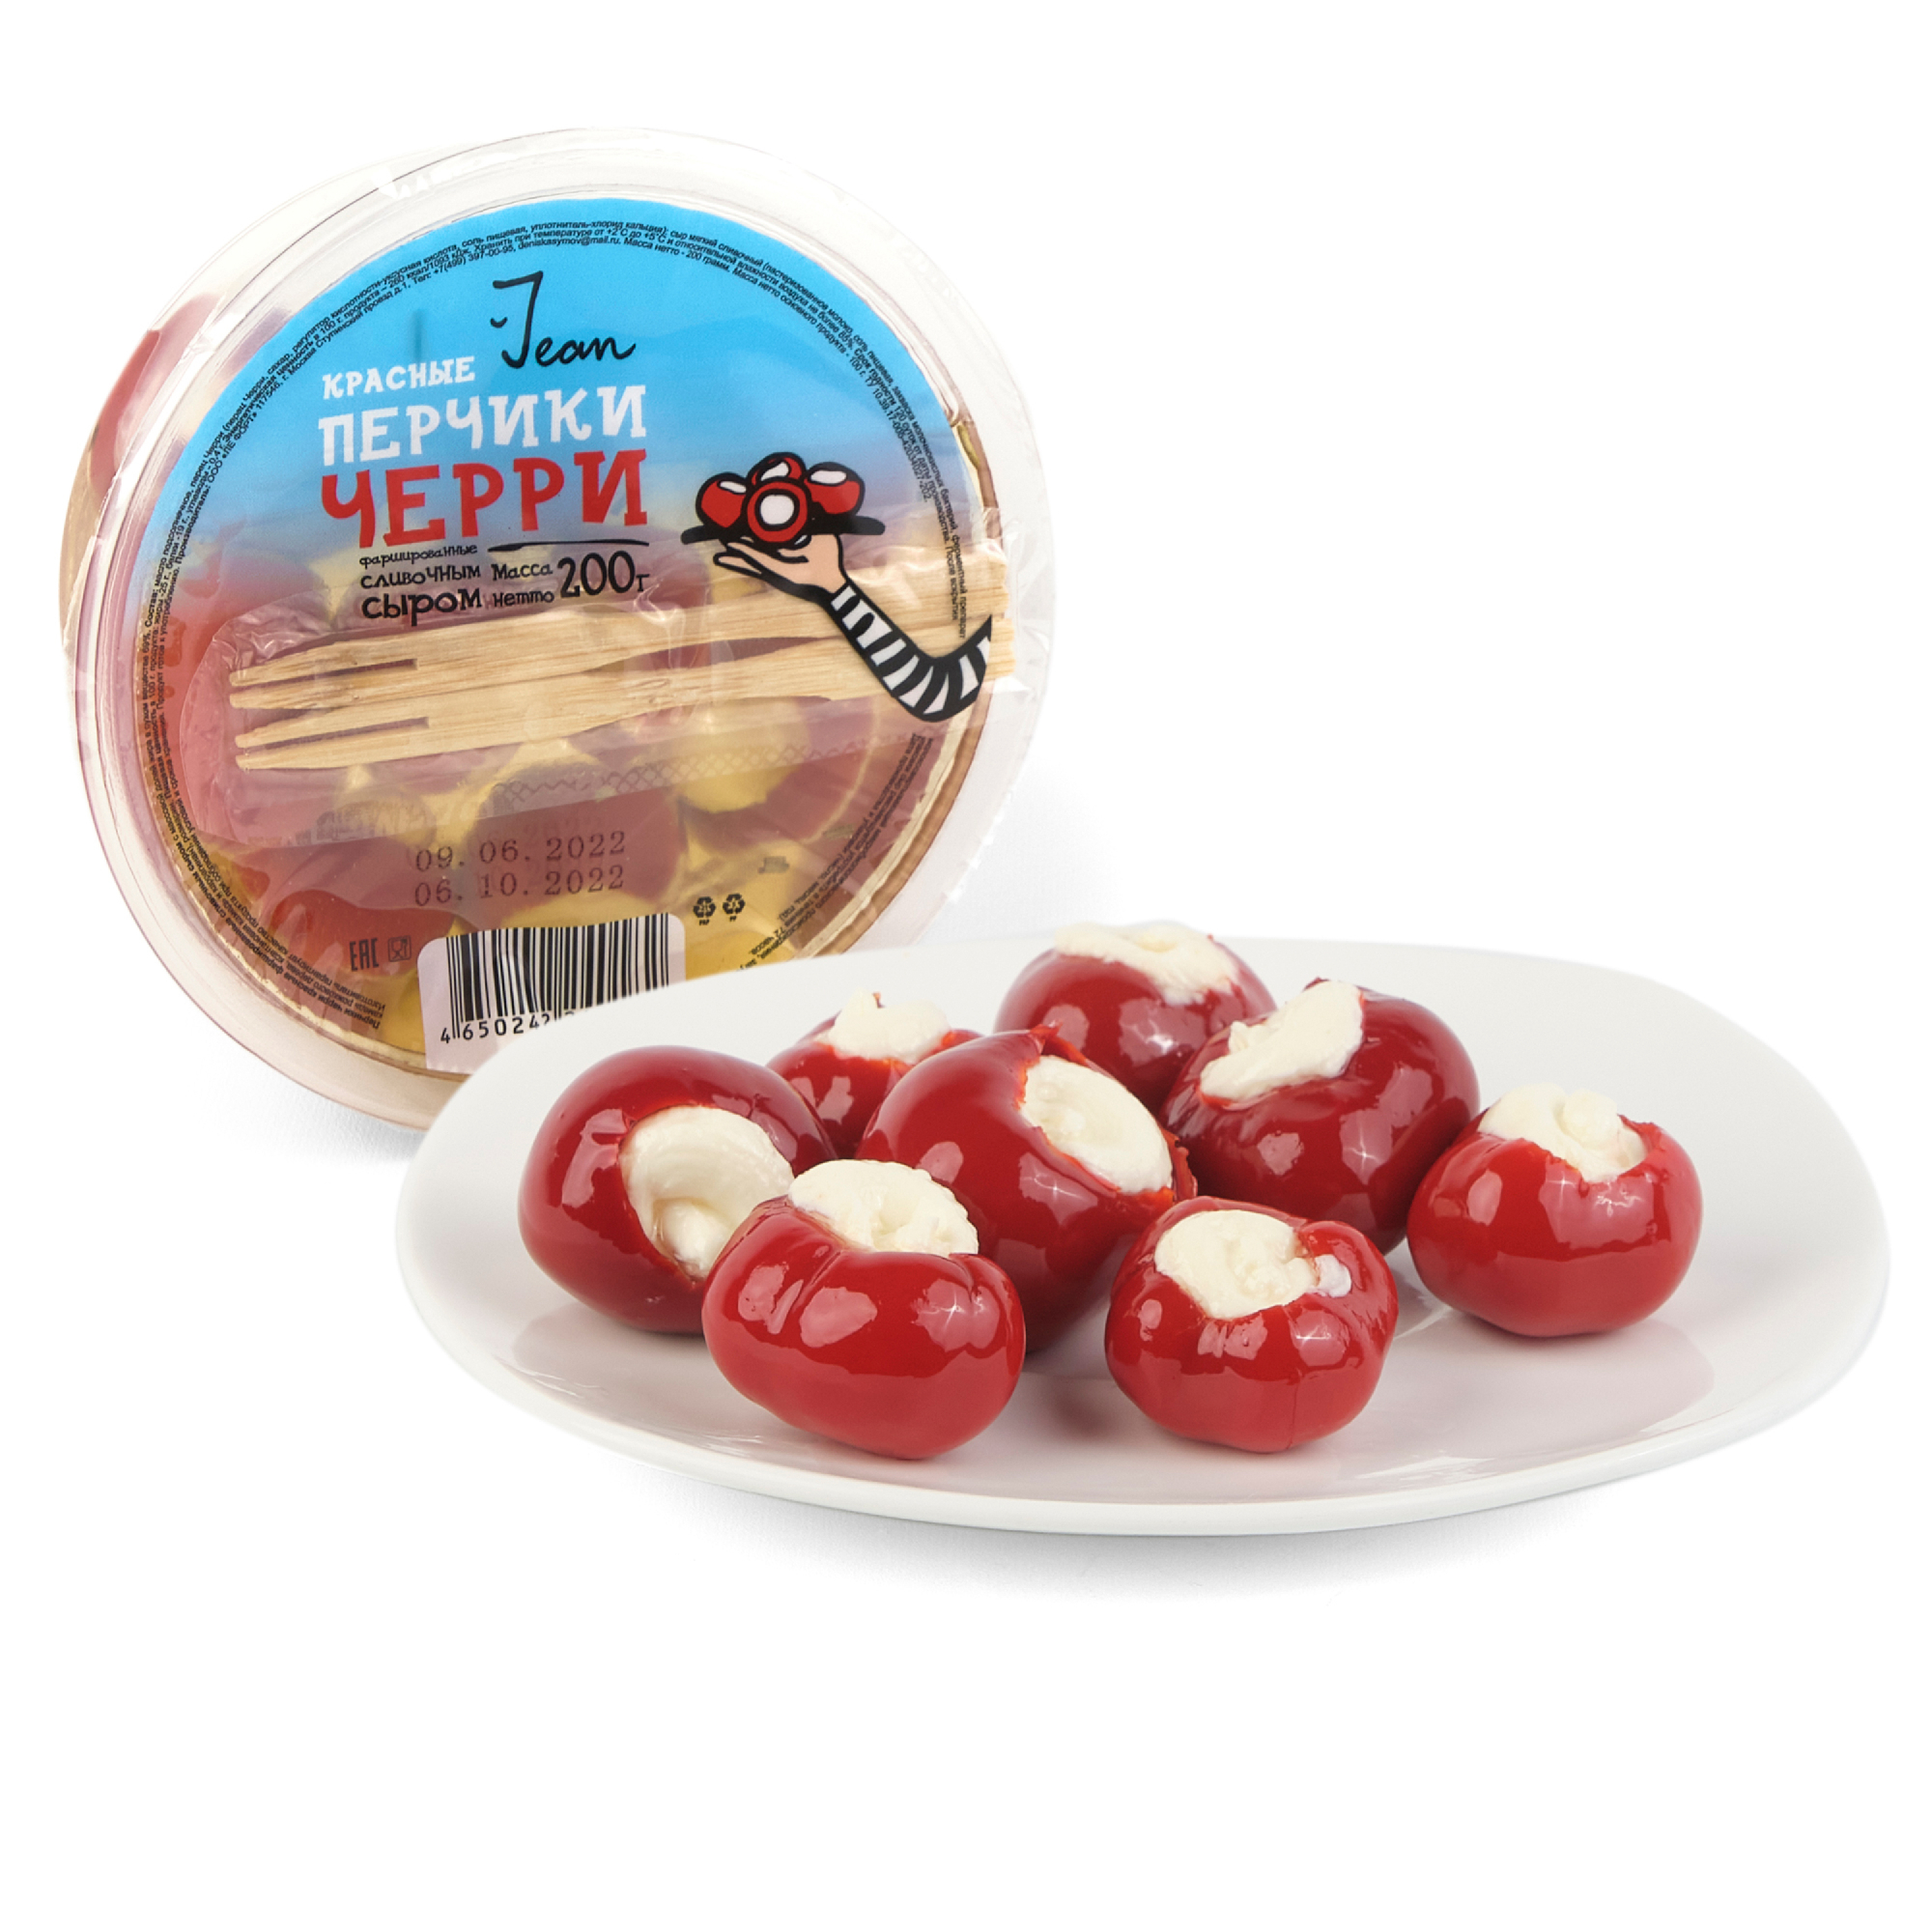 Фаршированные перчики Jean сливочным сыром, 200 г вяленые томаты ellenika фаршированные сливочным сыром 250 г